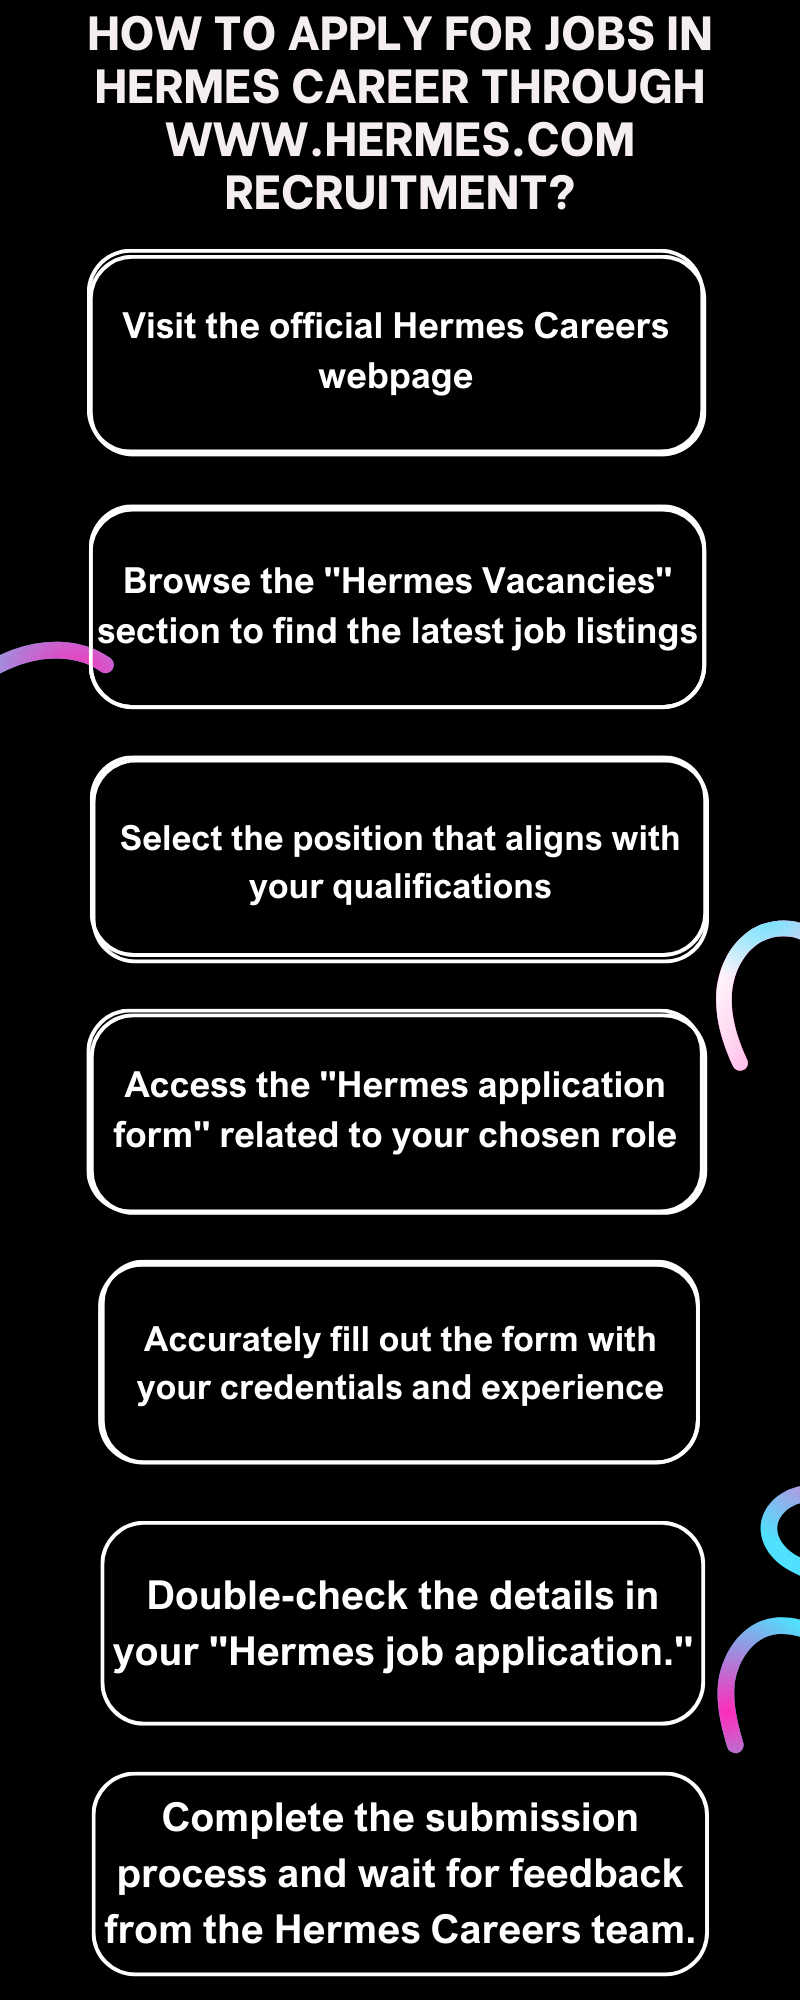 How to Apply for Jobs in Hermes Career through www.hermes.com recruitment?